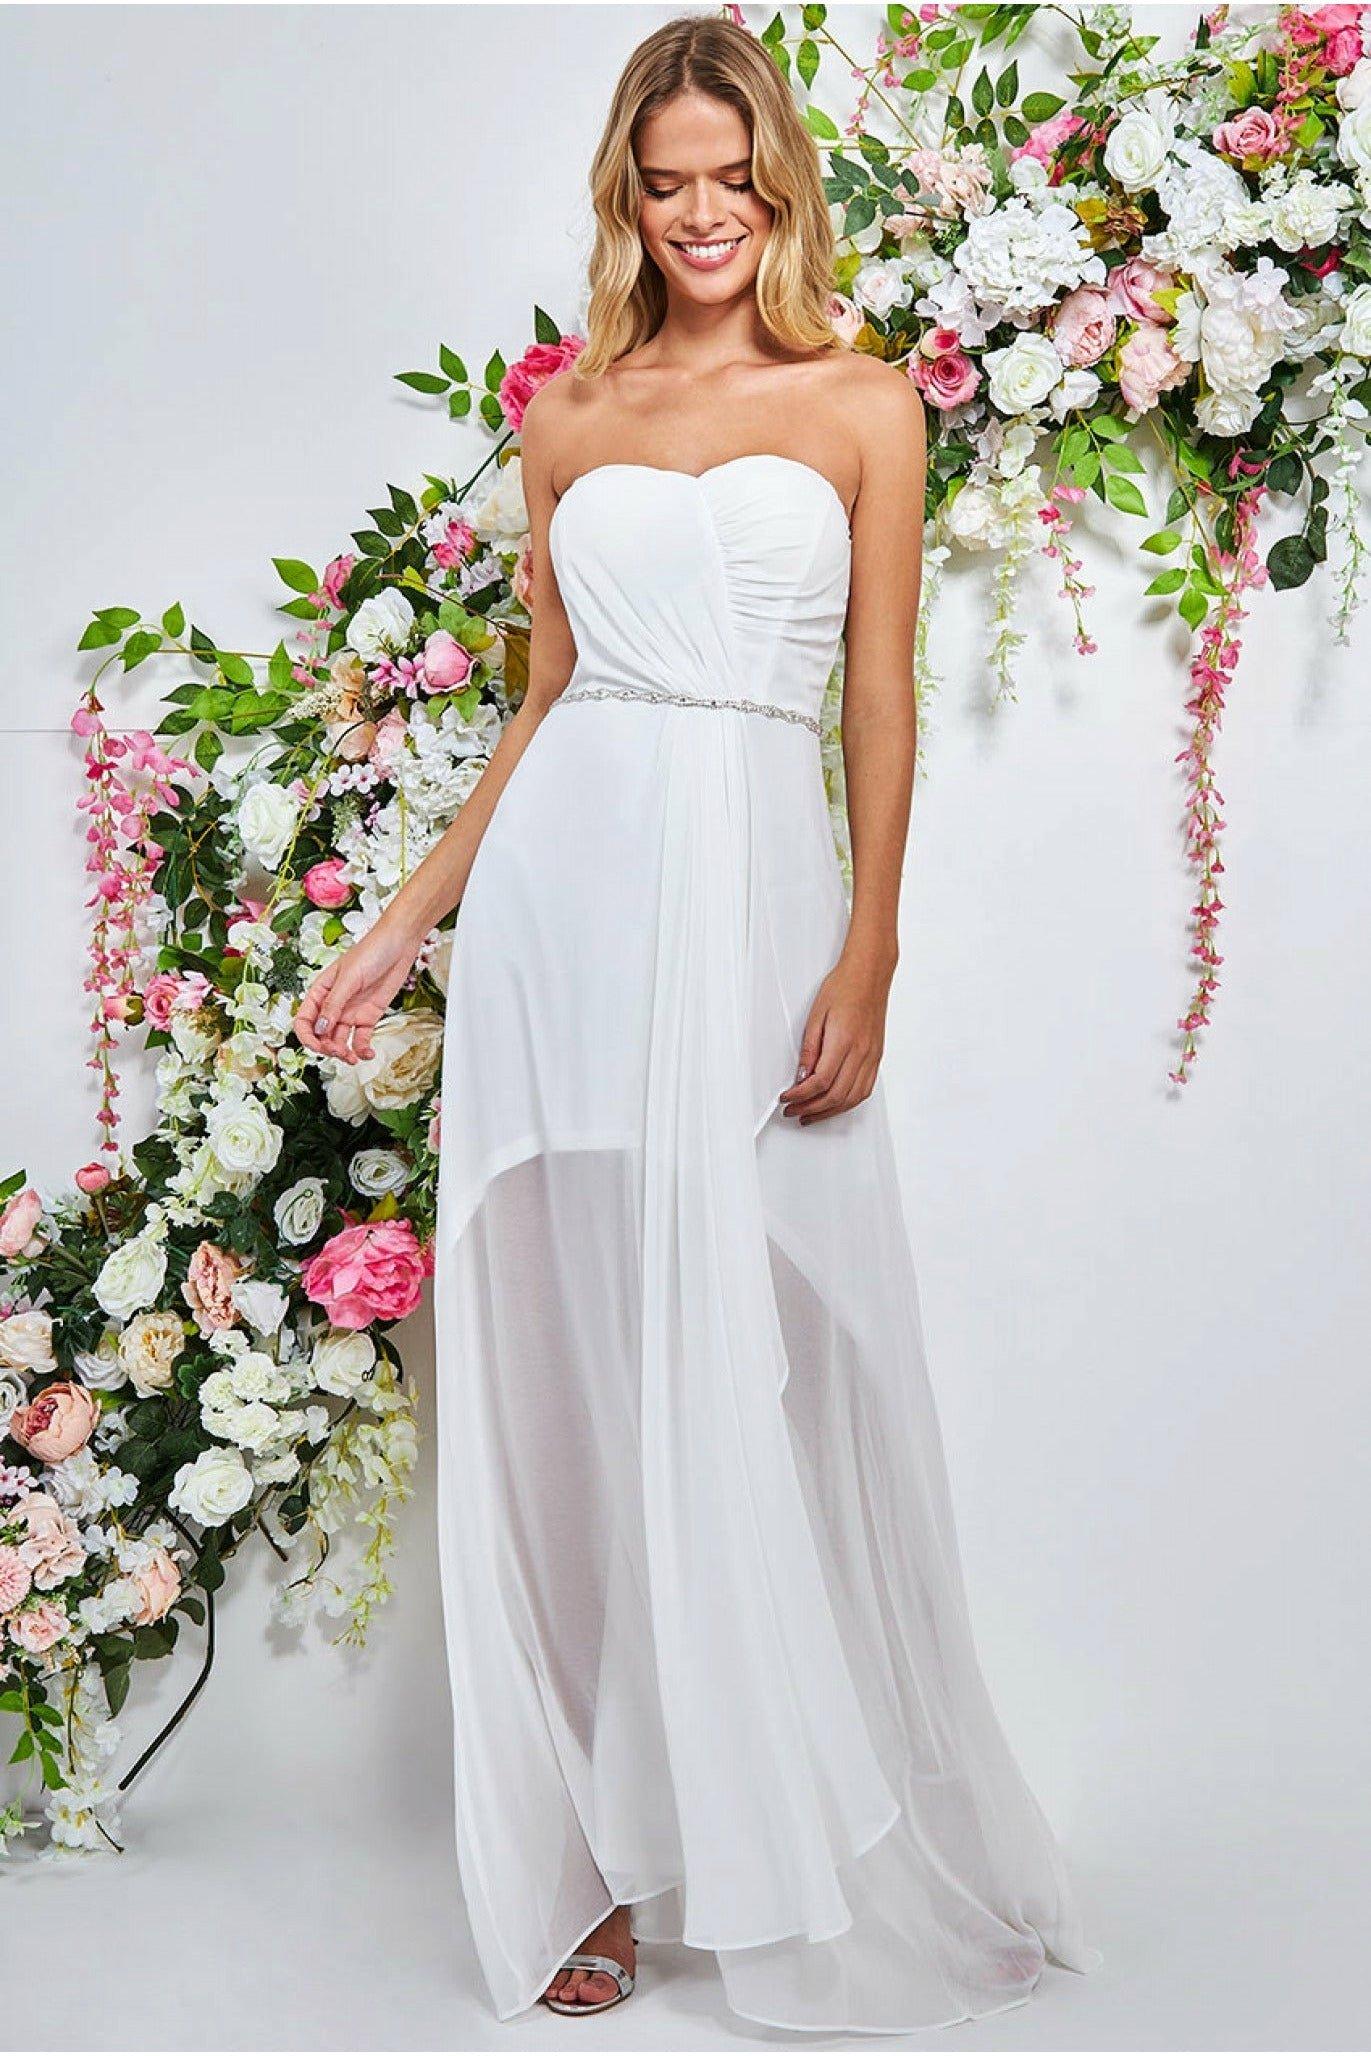 Bardot Chiffon Wedding Dress With Belt